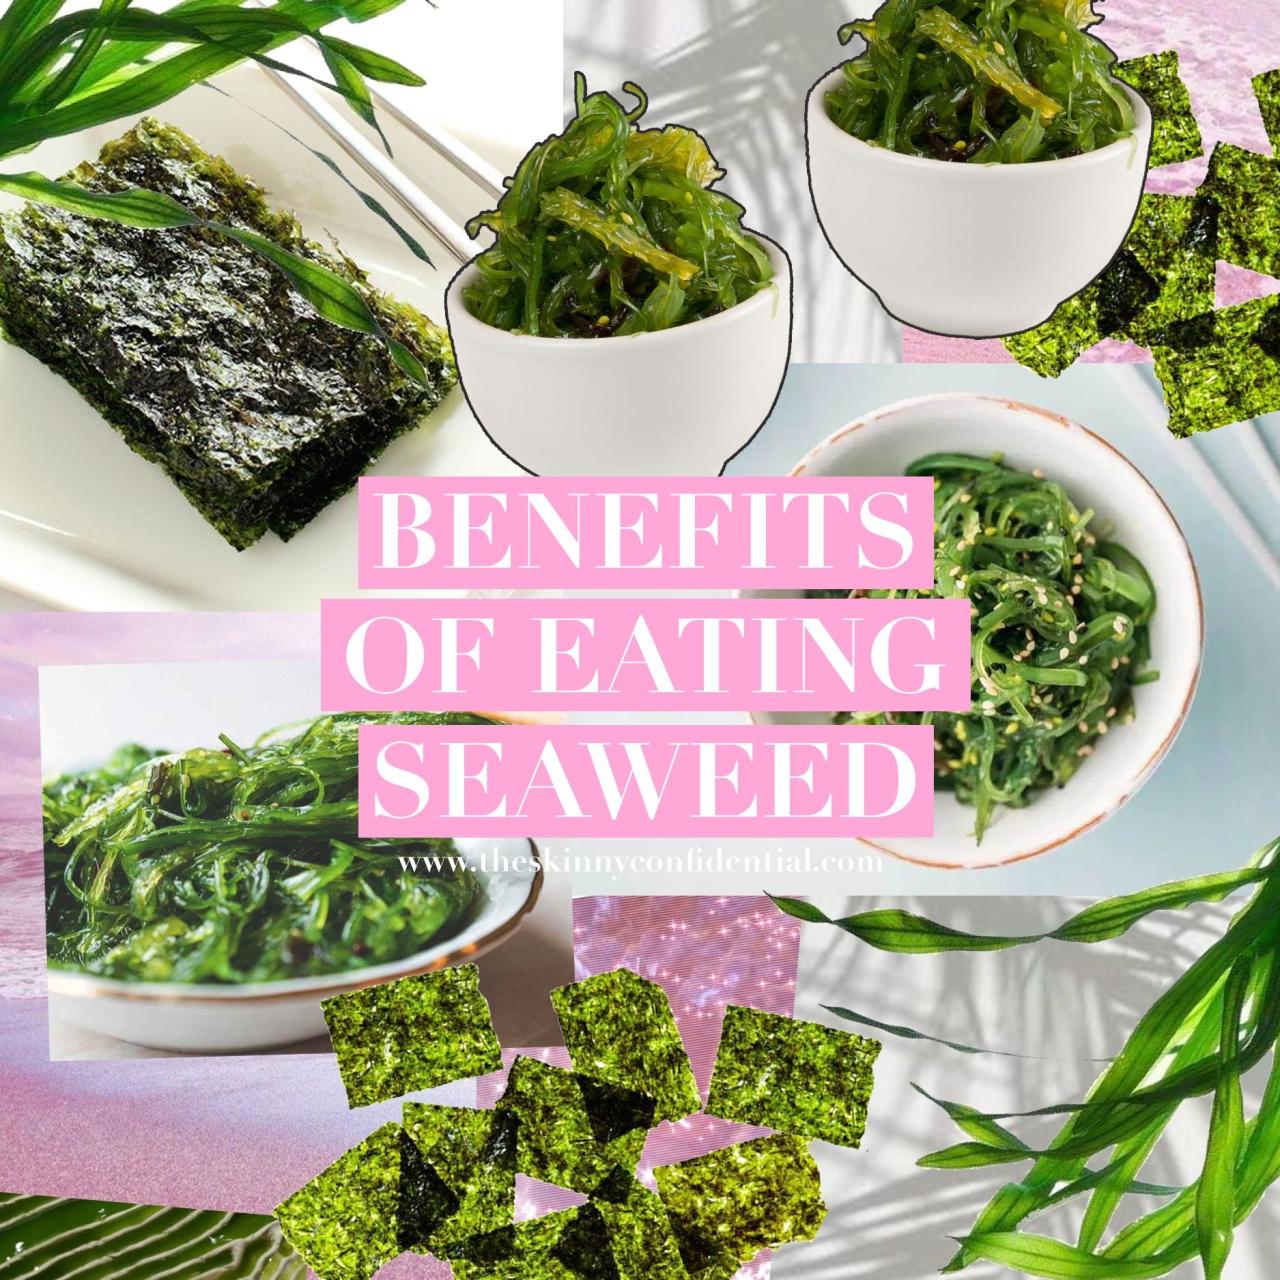 Seaweed aging